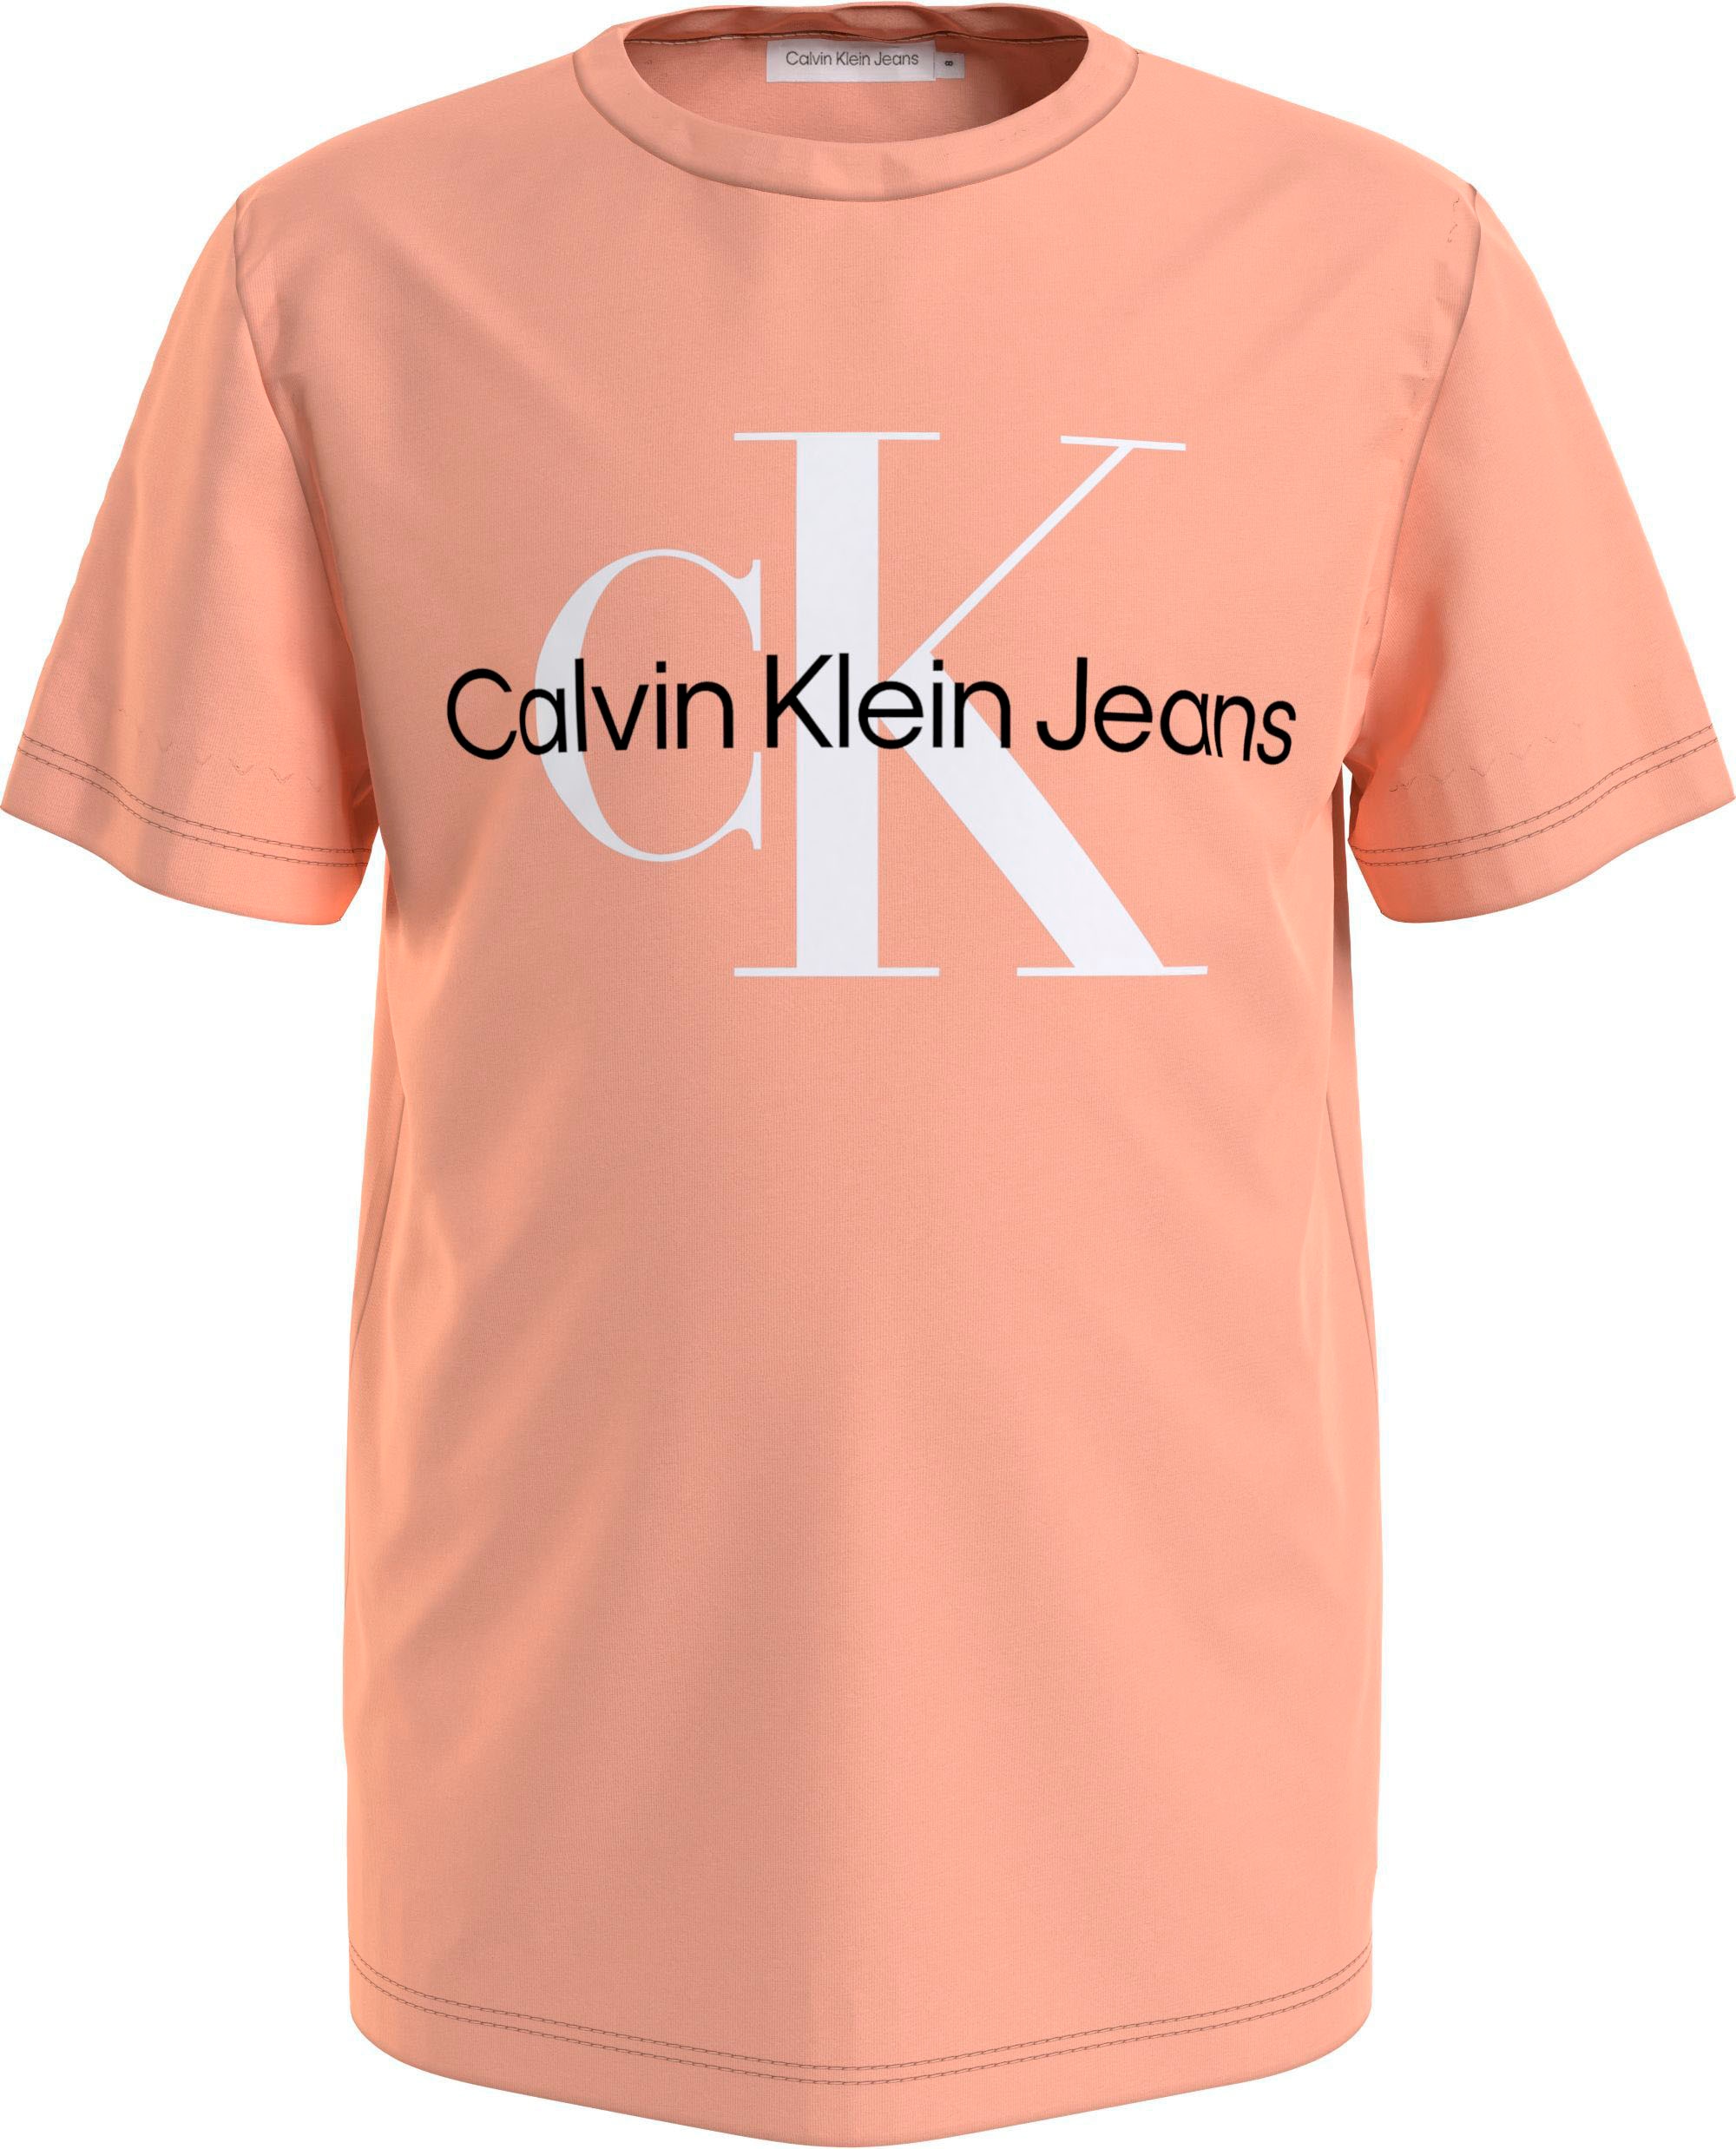 Calvin Klein Jeans T-Shirt »MONOGRAM LOGO T-SHIRT«, Kinder Kids Junior  MiniMe,für Mädchen und Jungen bei ♕ | T-Shirts